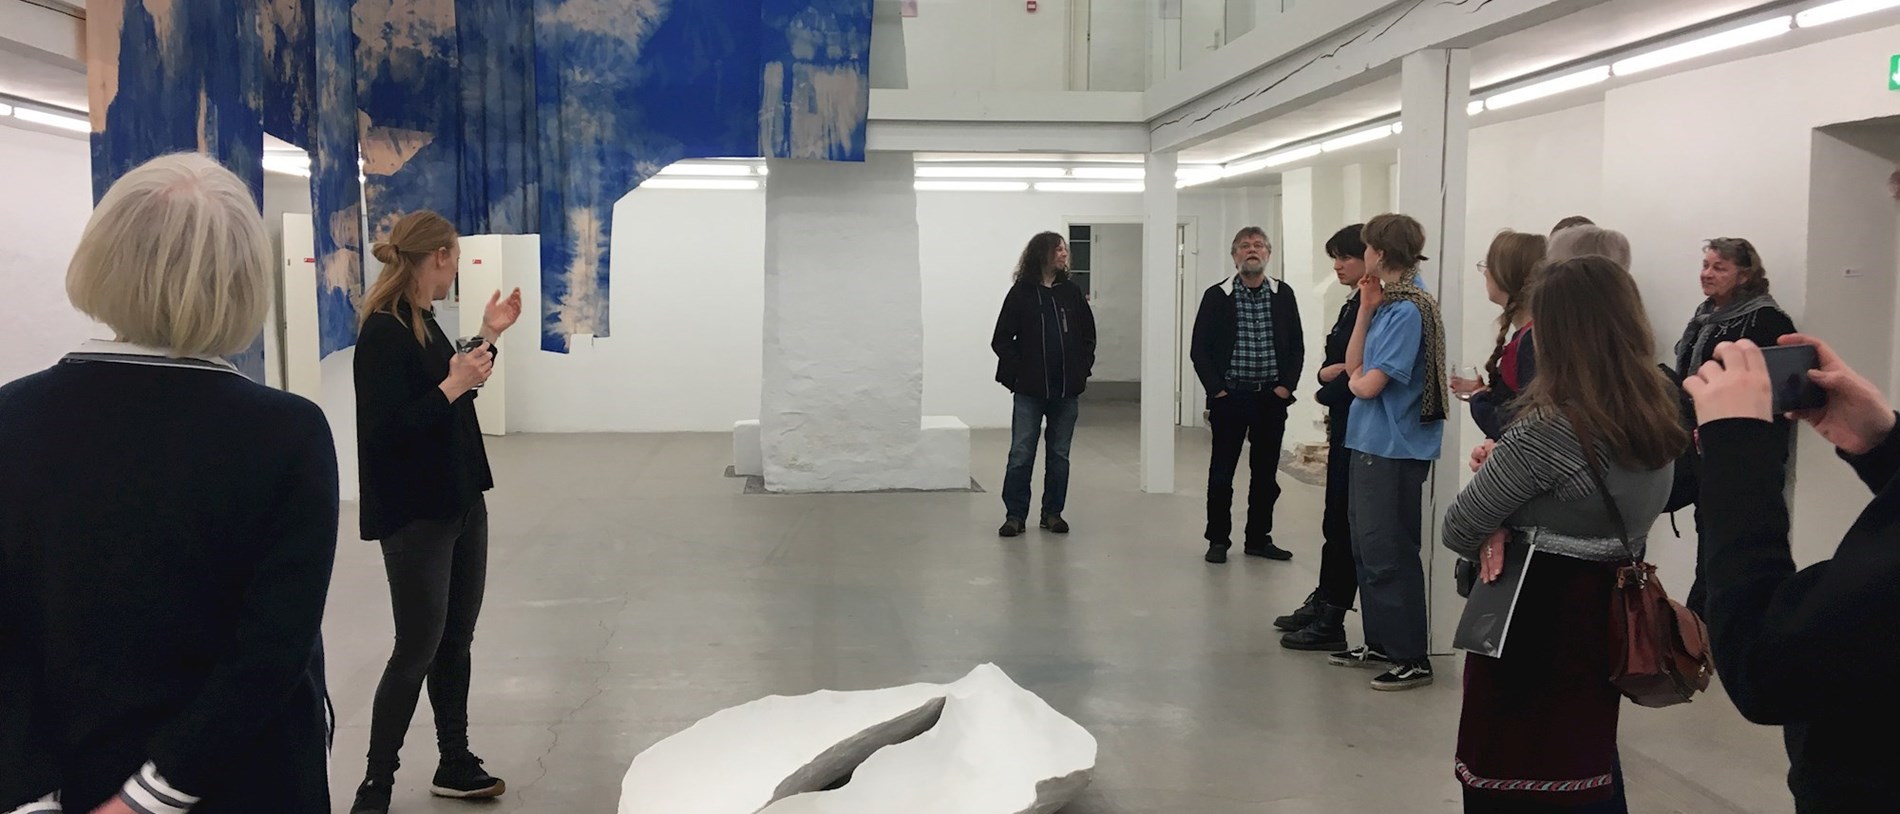 En gruppe mennesker, der høre kunstneren fortælle om udstillingen